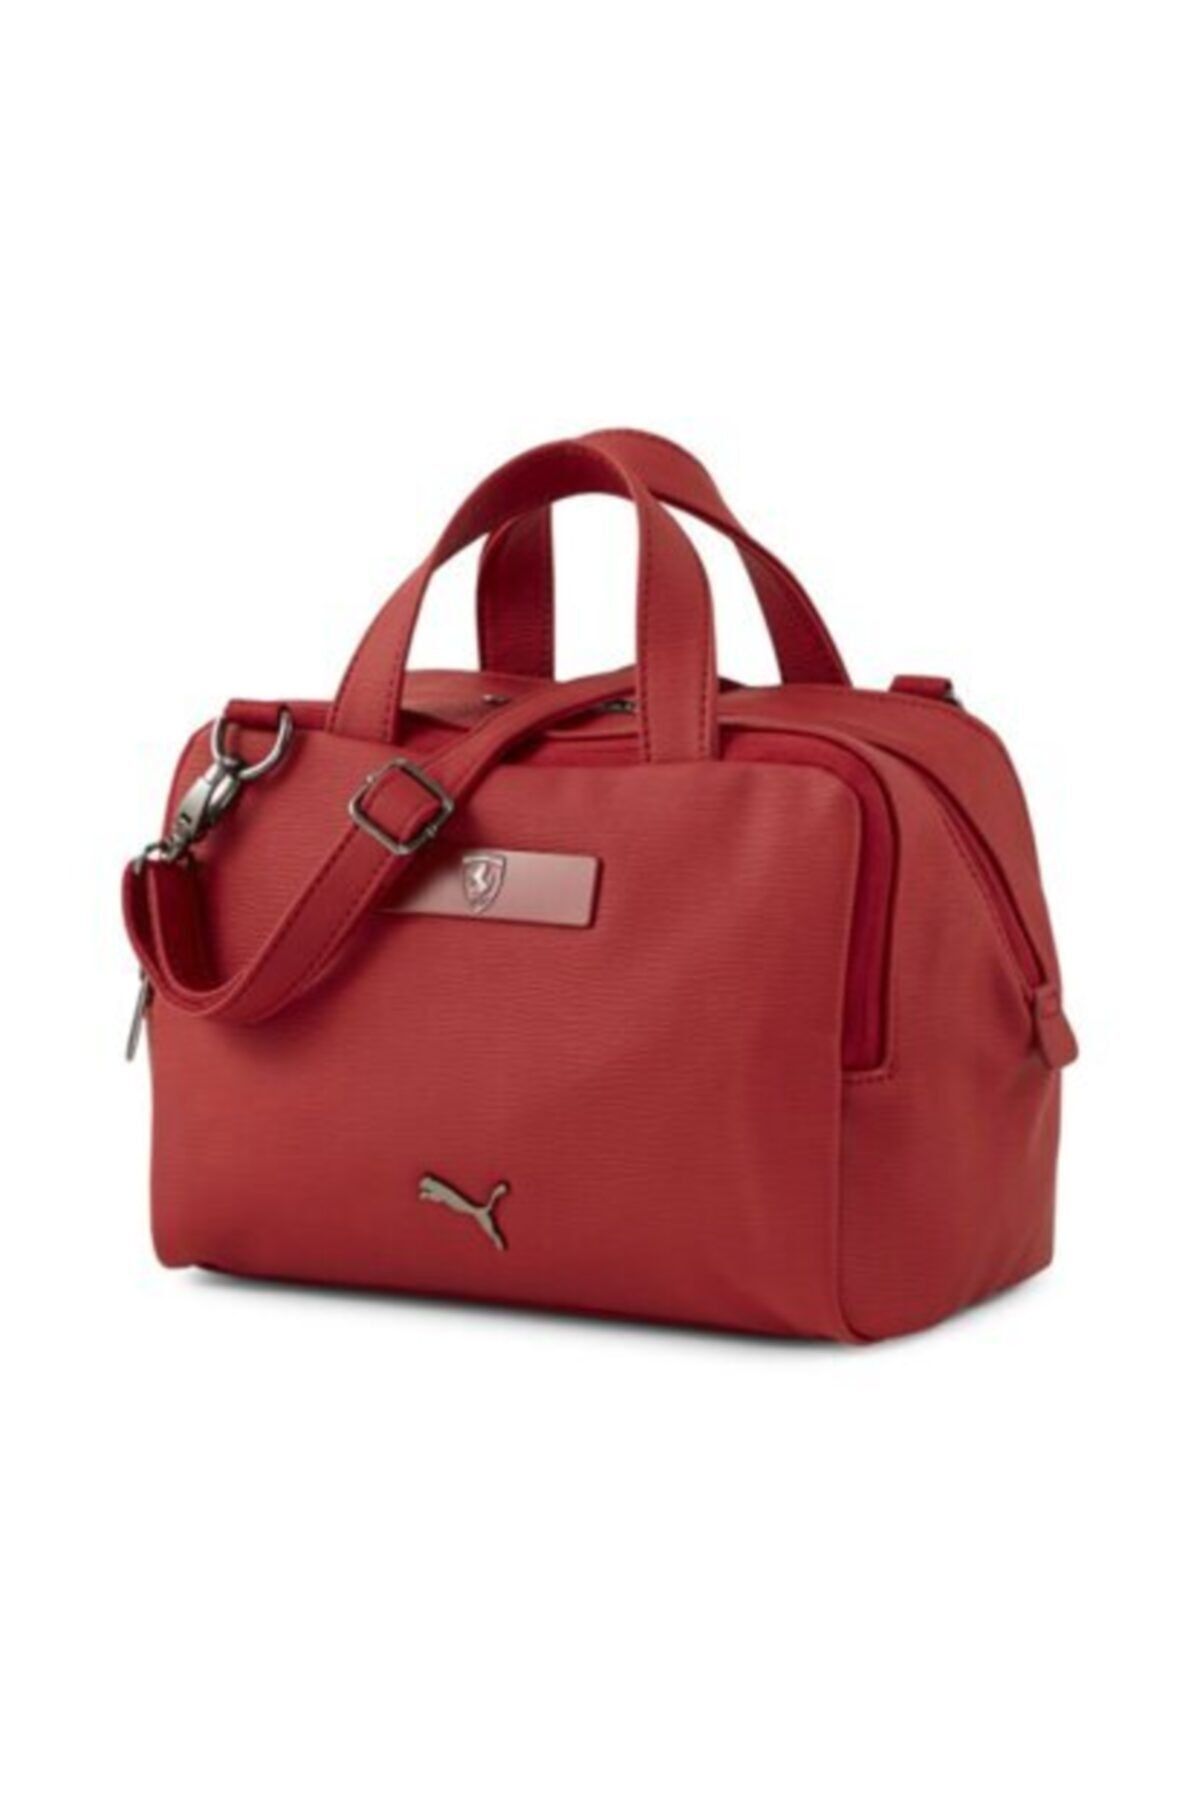 Puma Ferrari Style Handbag Kadın Kırmızı El Ve Omuz Çantası - 07733603